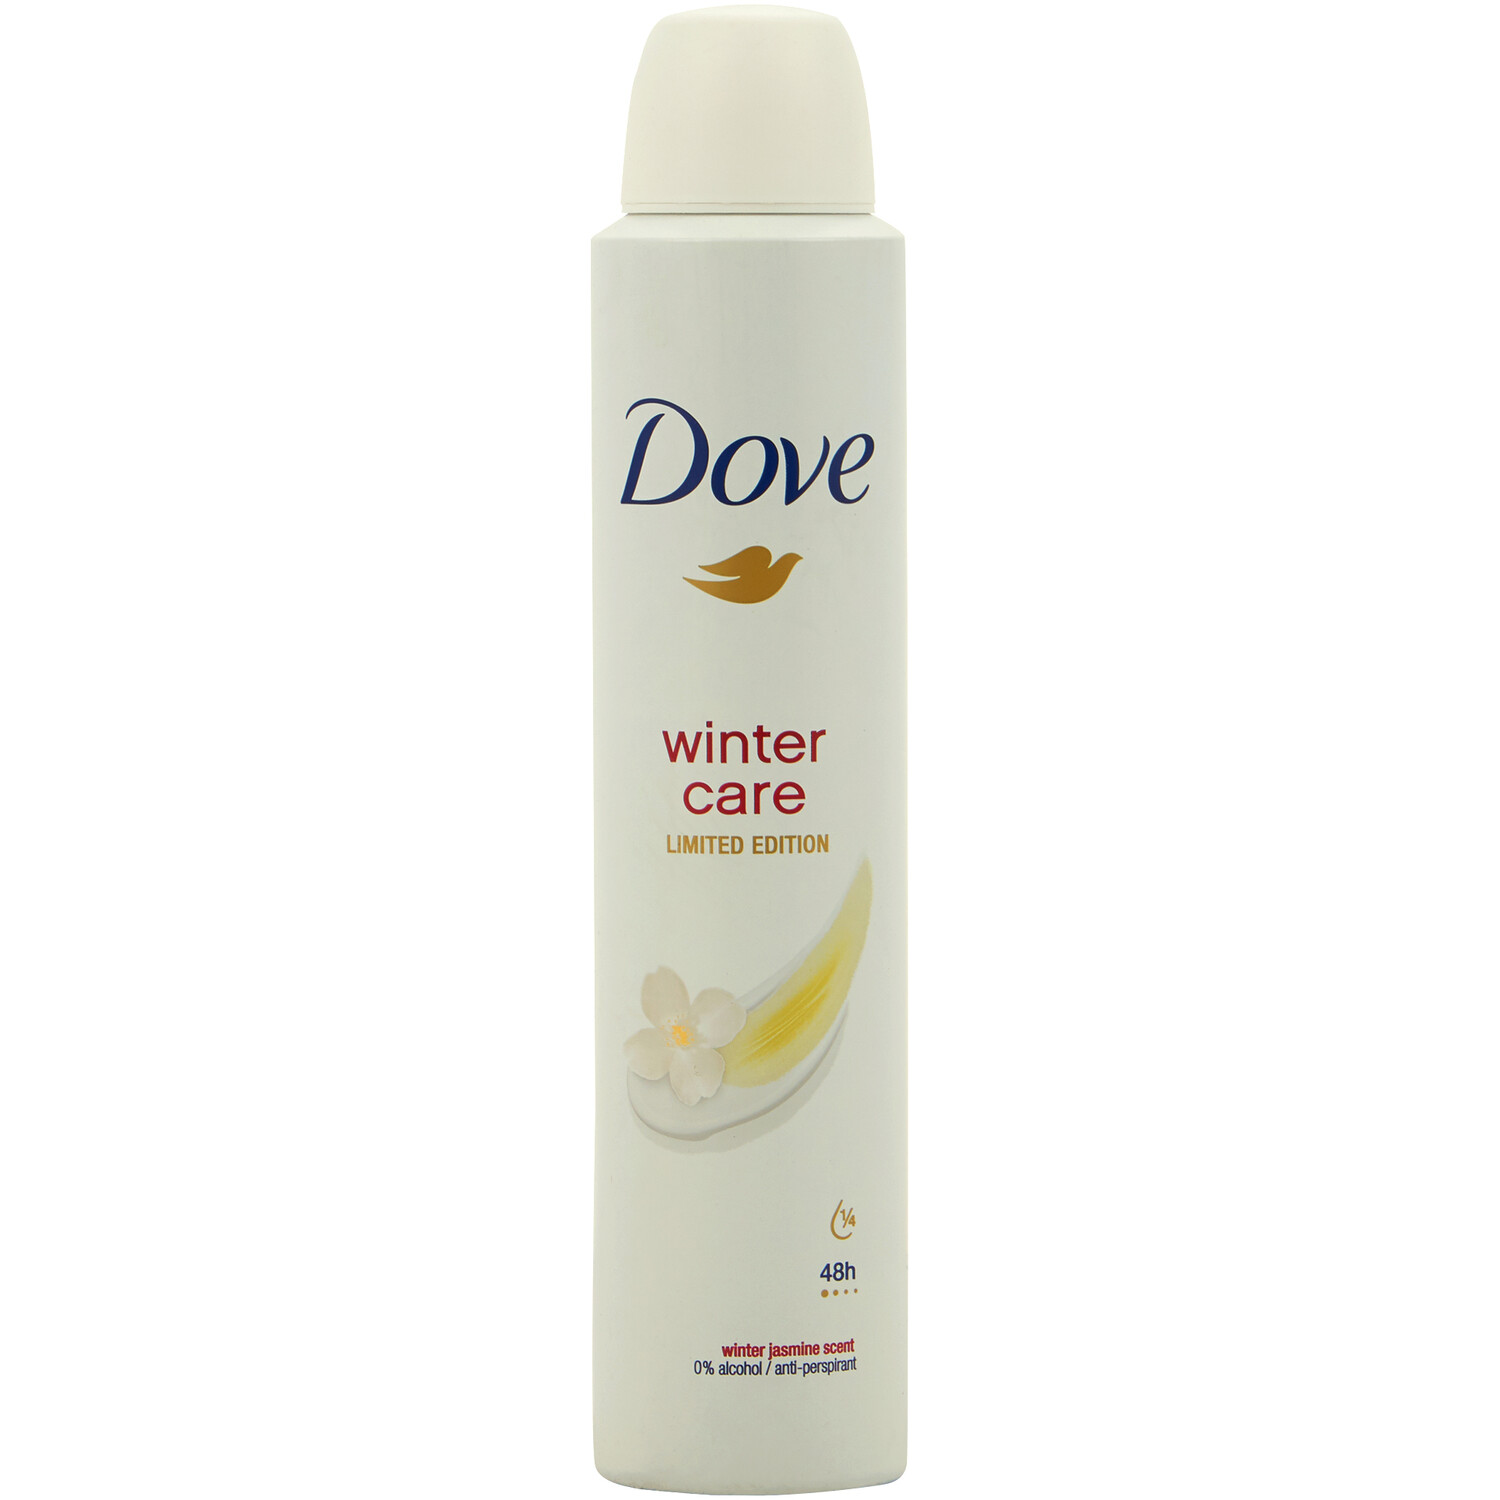 Dove Winter Care Anti-Perspirant 200ml - White Image 1